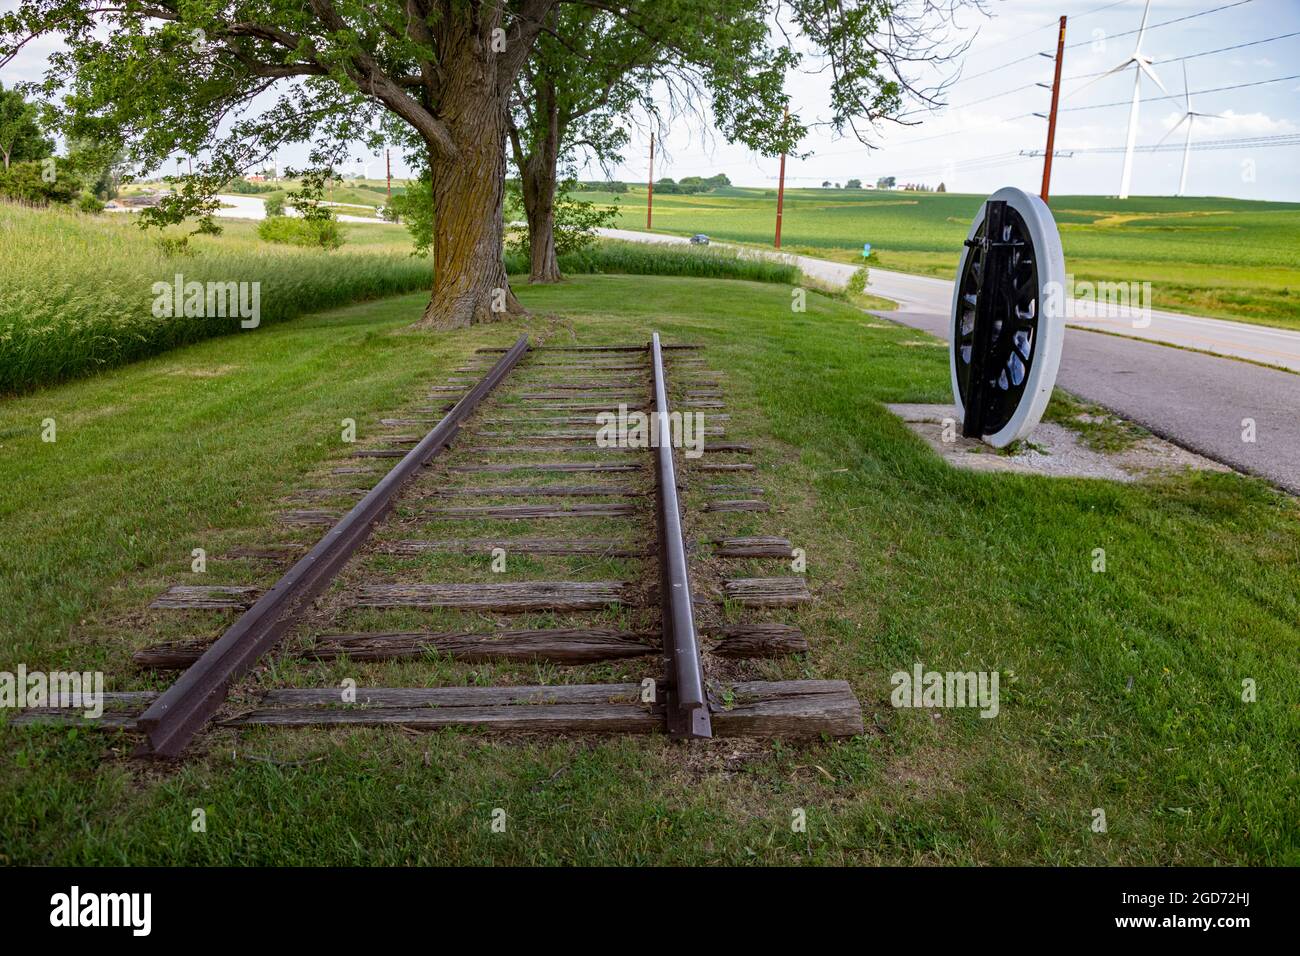 Adair, Iowa - die historische Stätte von Jesse James, der Ort des ersten Eisenbahnraubs im Westen, der von der Jesse James Gang am 21. Juli 1873 begangen wurde. Stockfoto